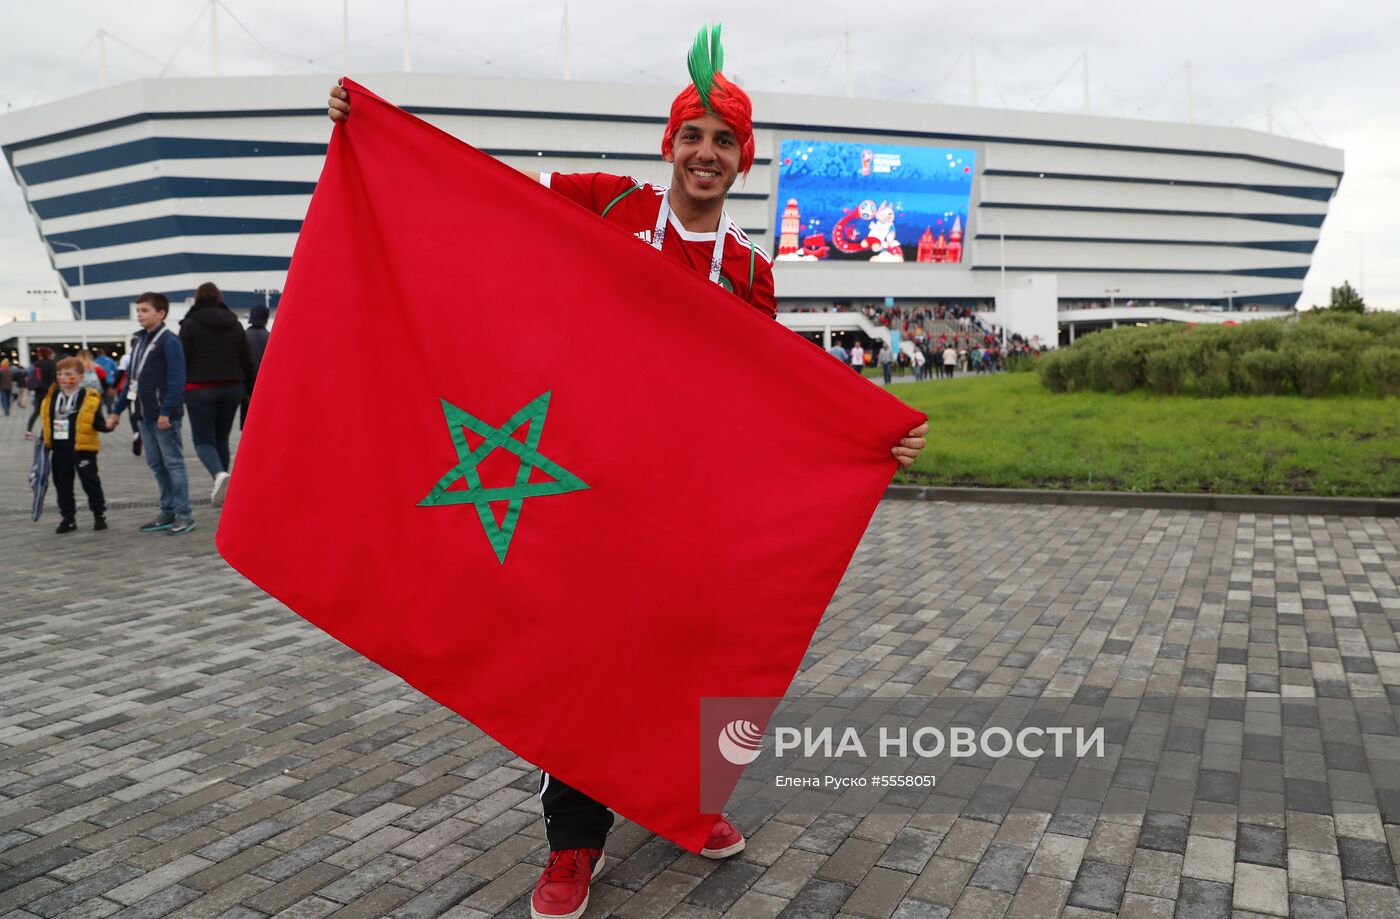 Болельщики перед матчем ЧМ-2018 по футболу между сборными Испании и Марокко